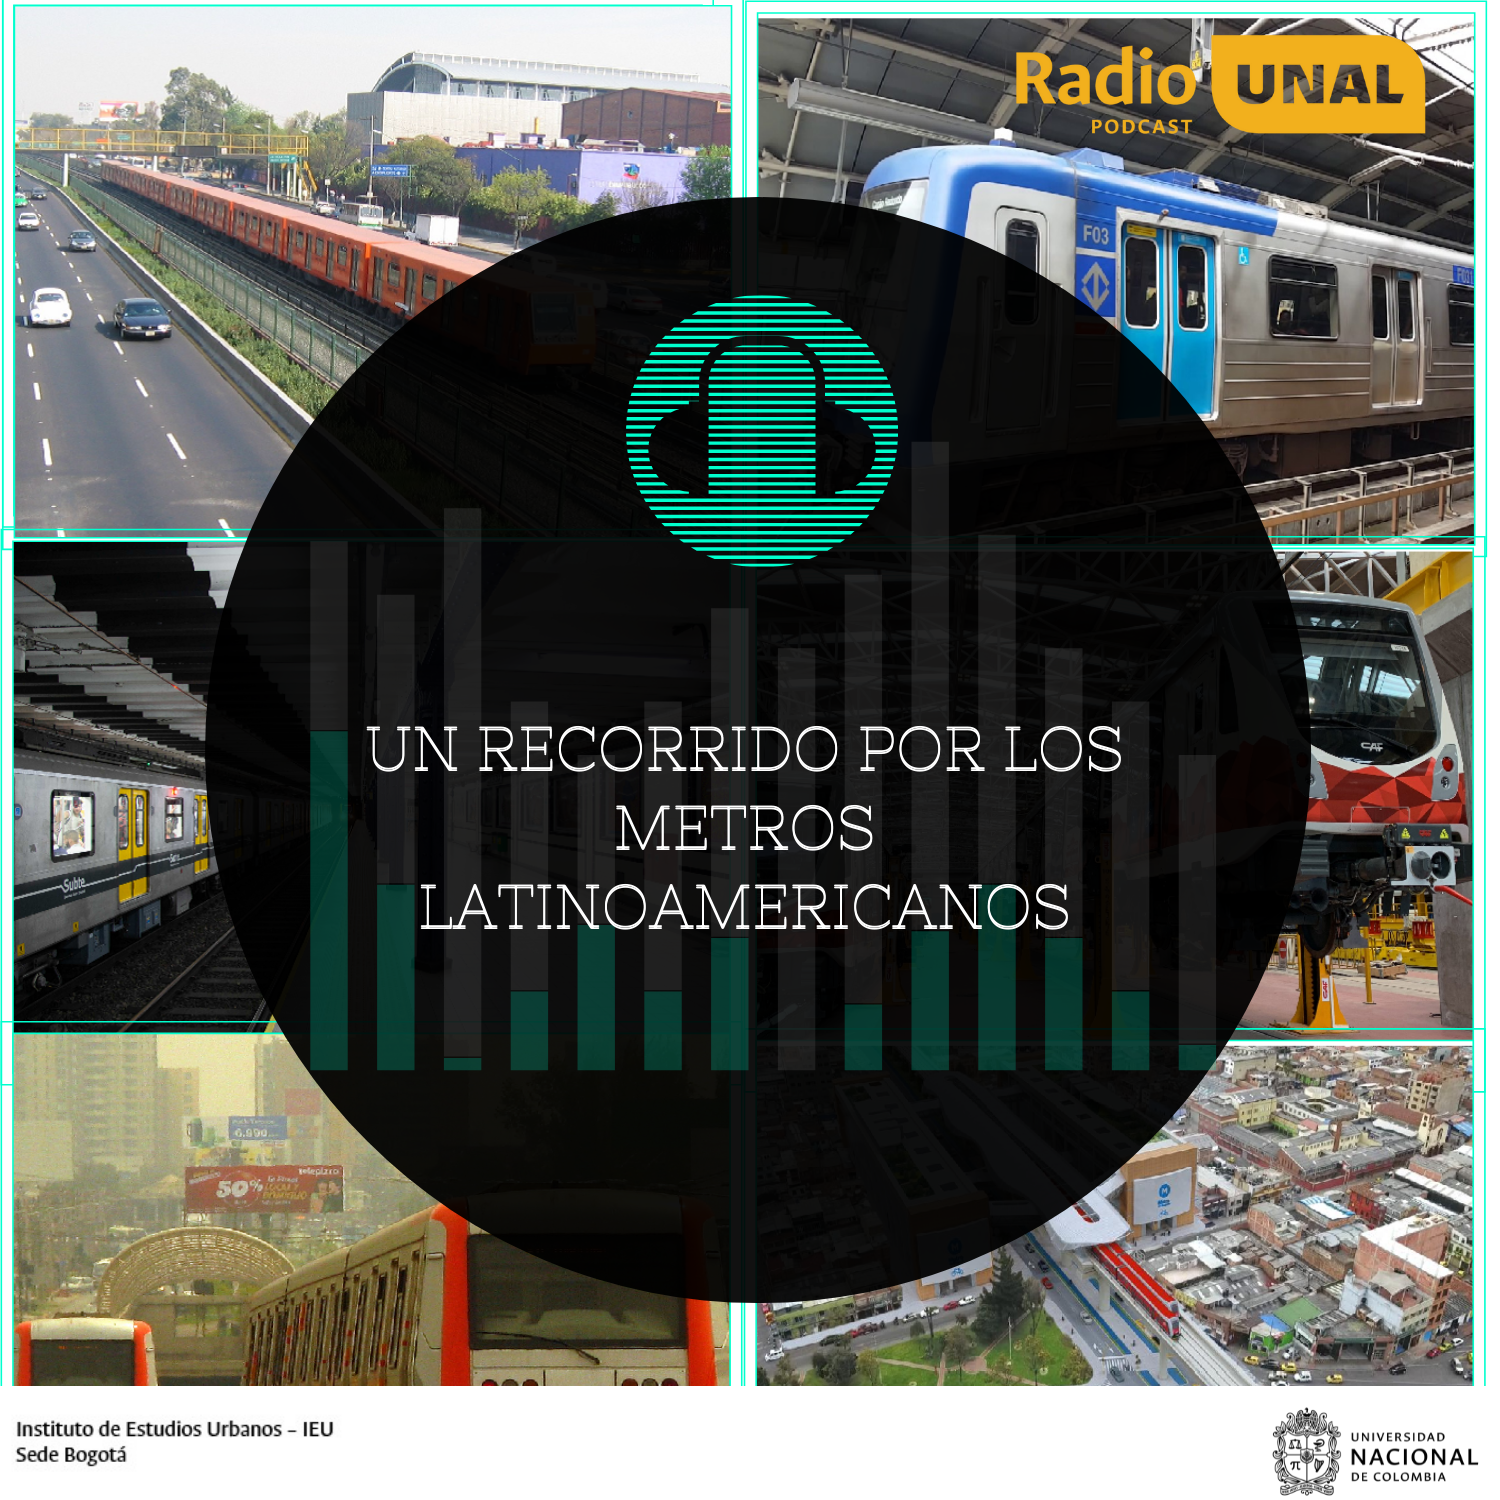 #PodcastRadioUnal Un recorrido por los metros latinoamericanos